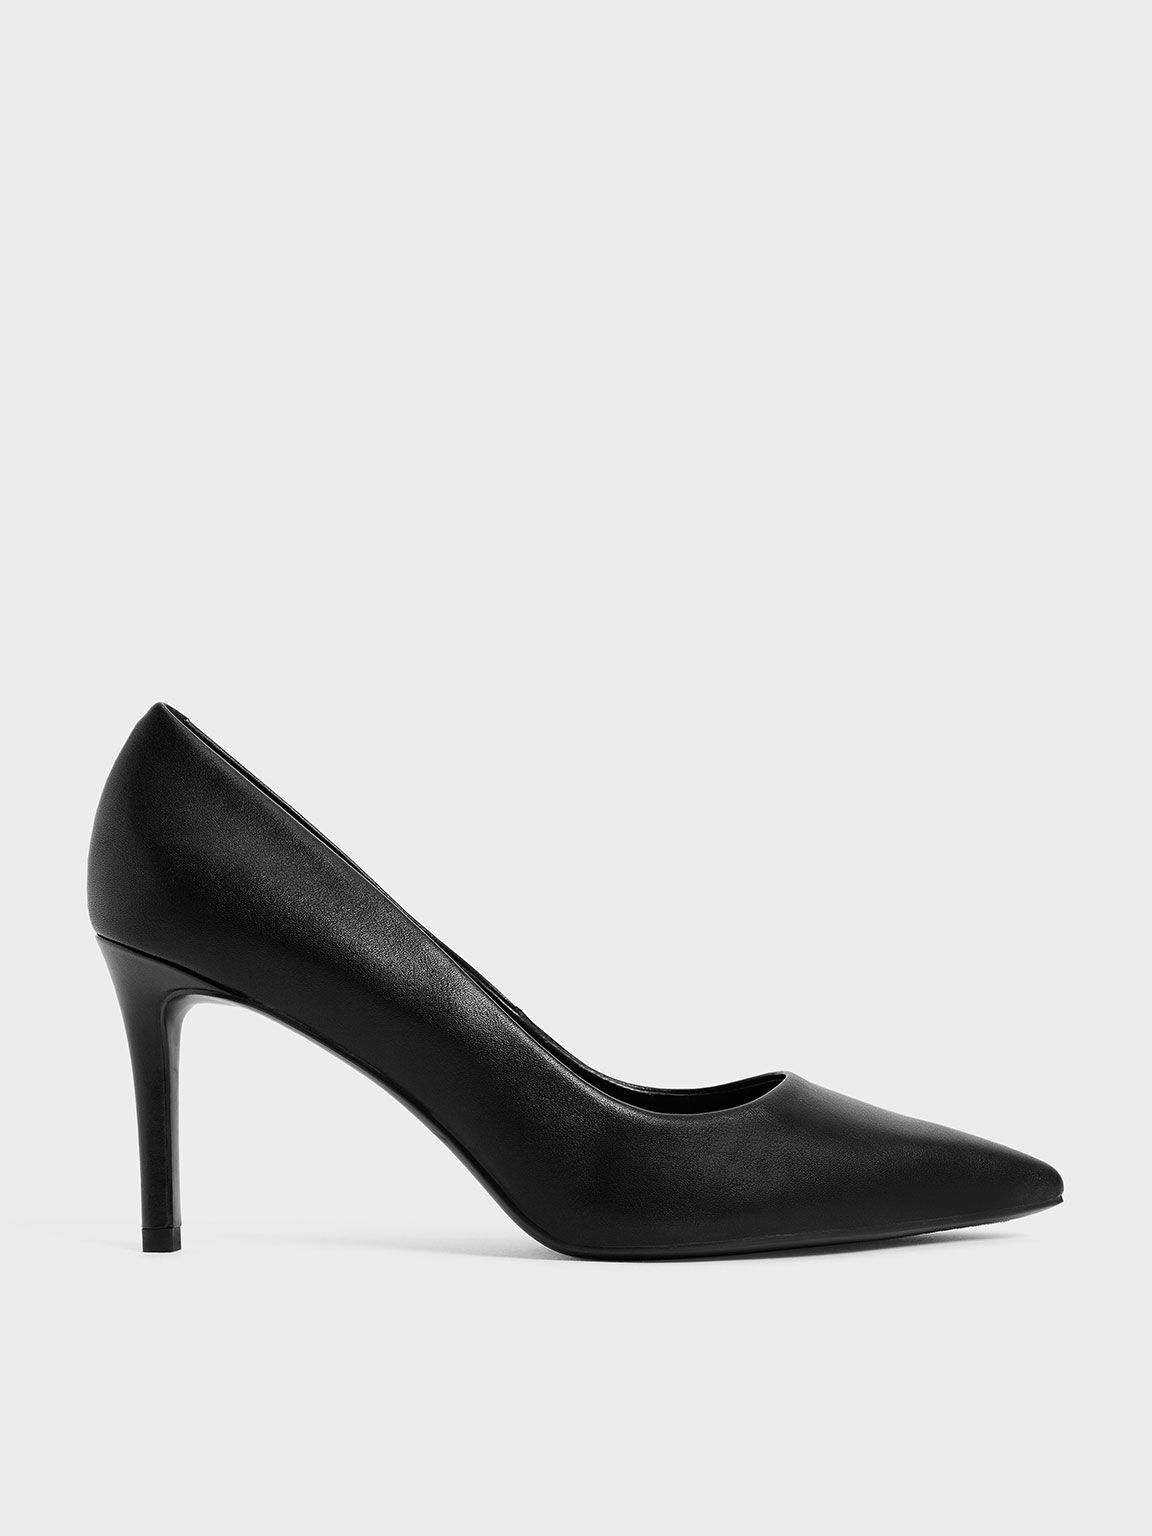 SO Heels - Castelo Exclusive Fashion